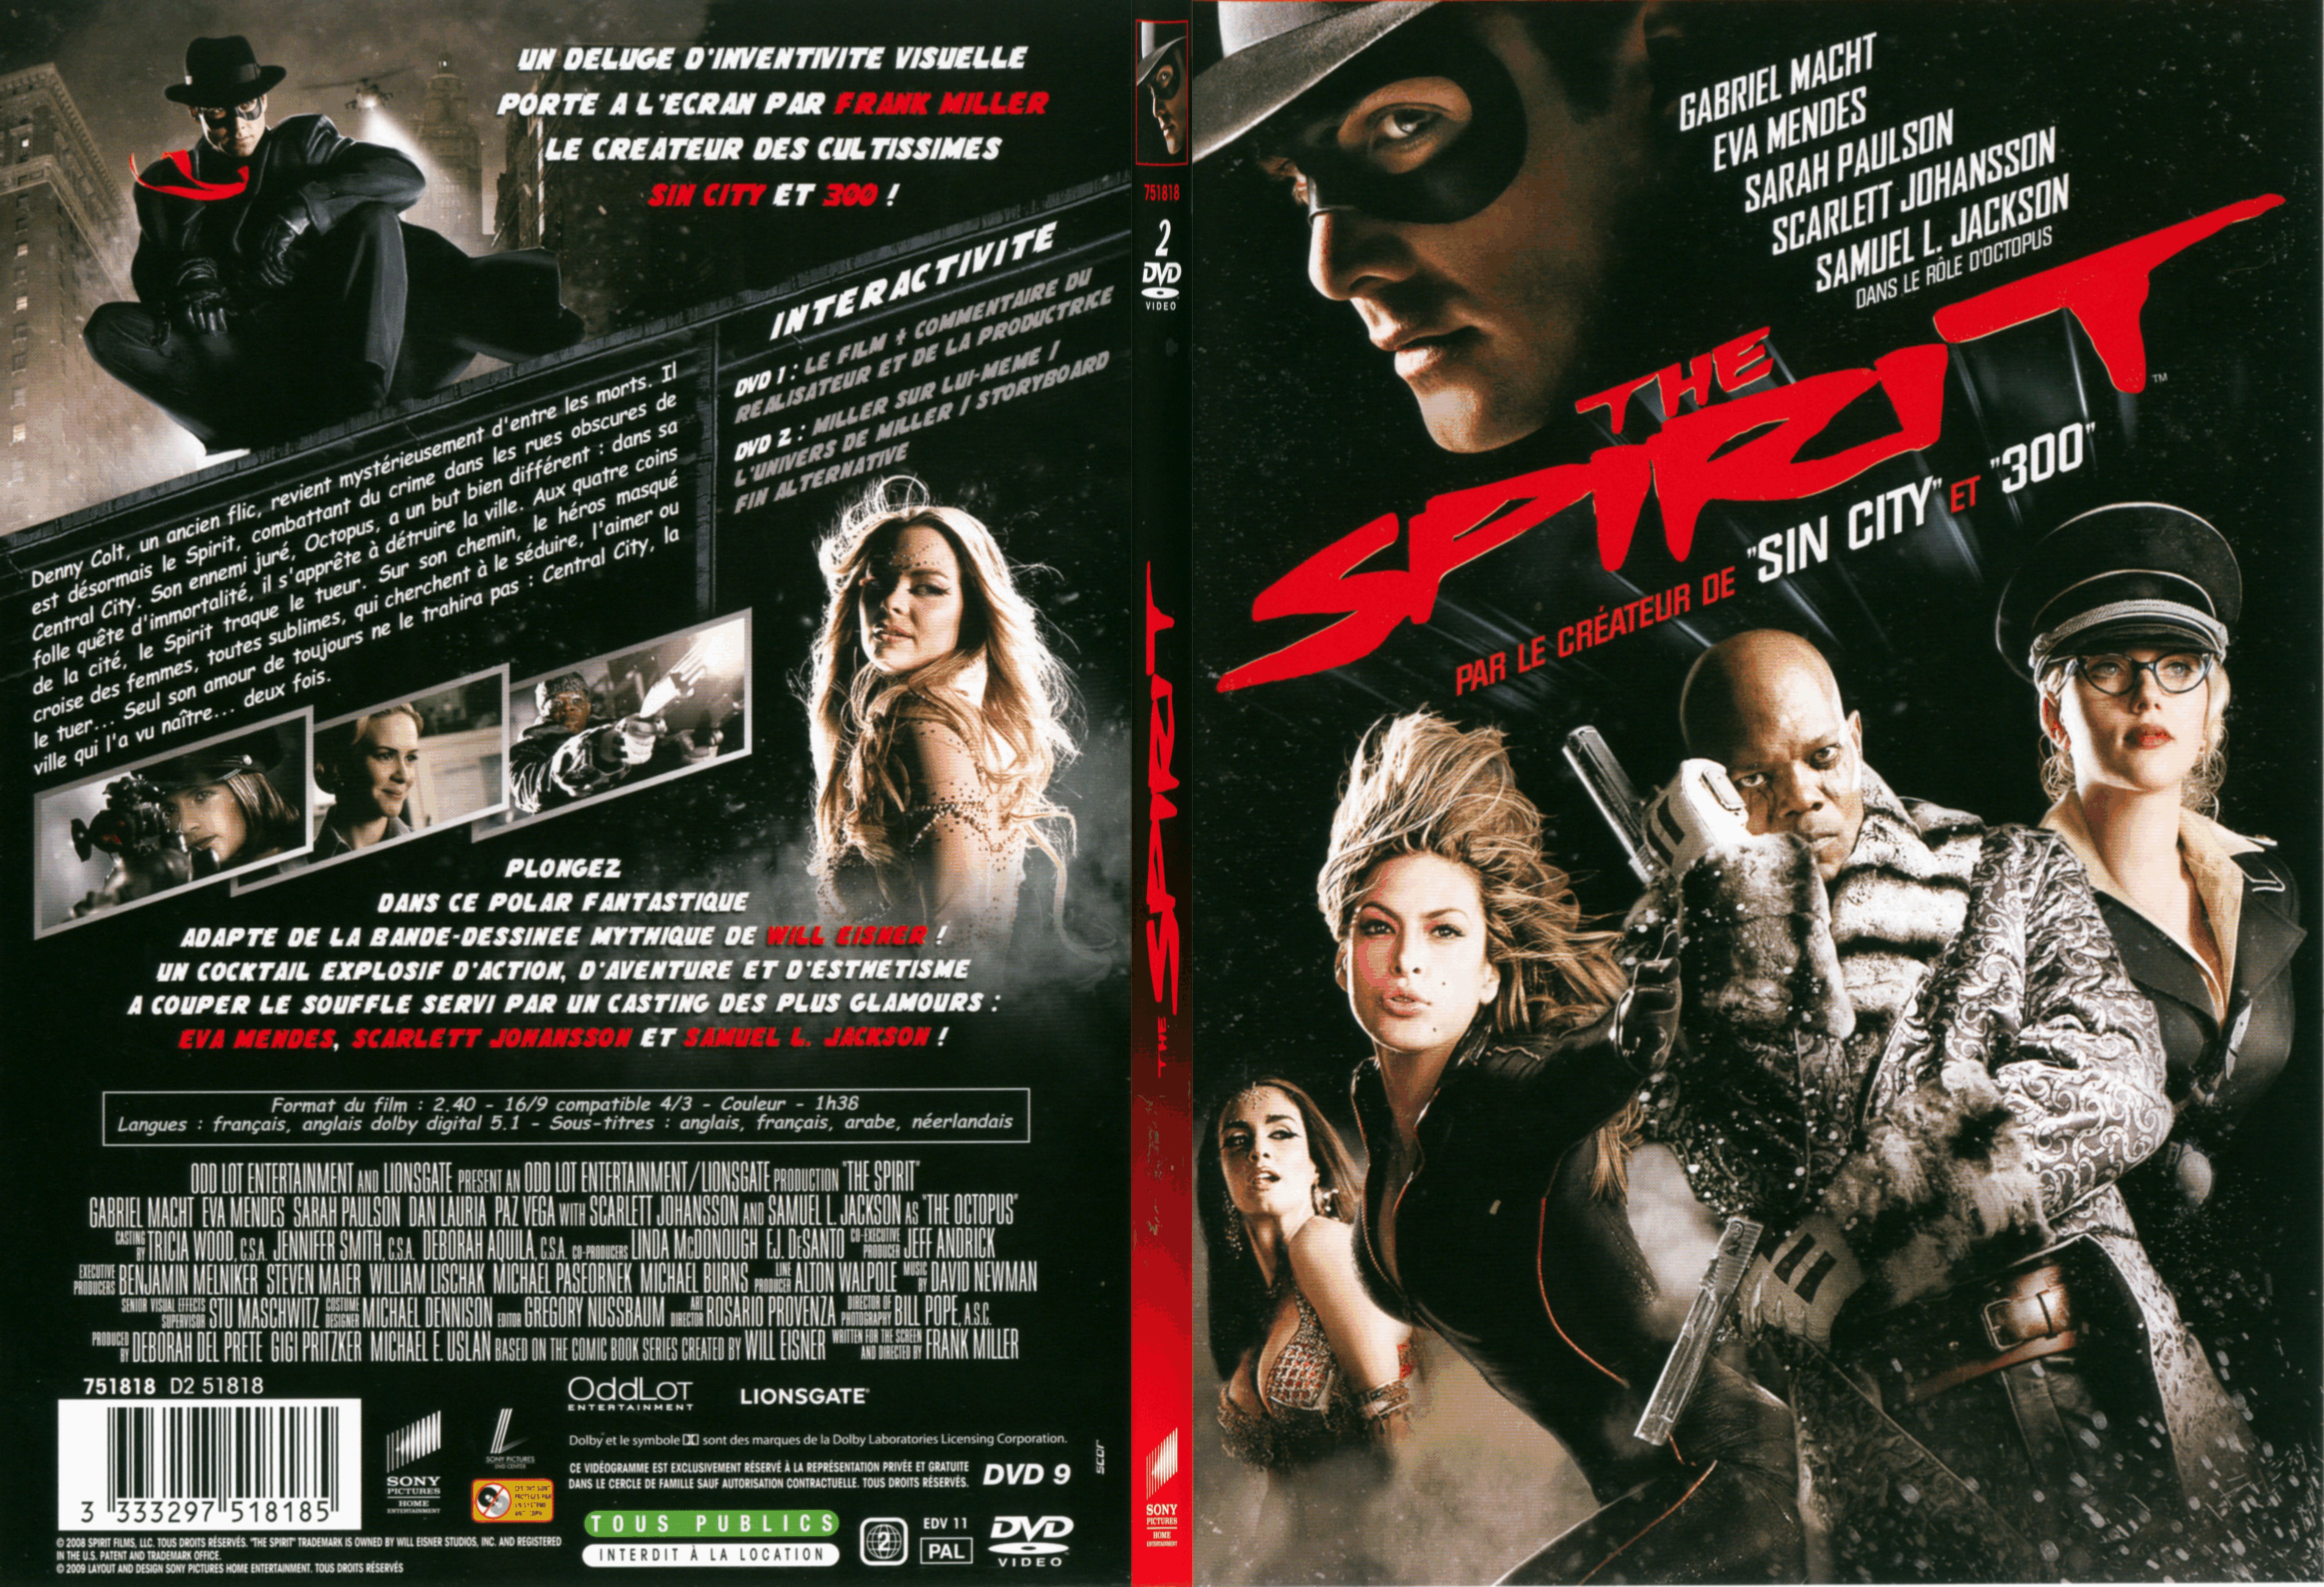 Jaquette DVD The spirit - SLIM